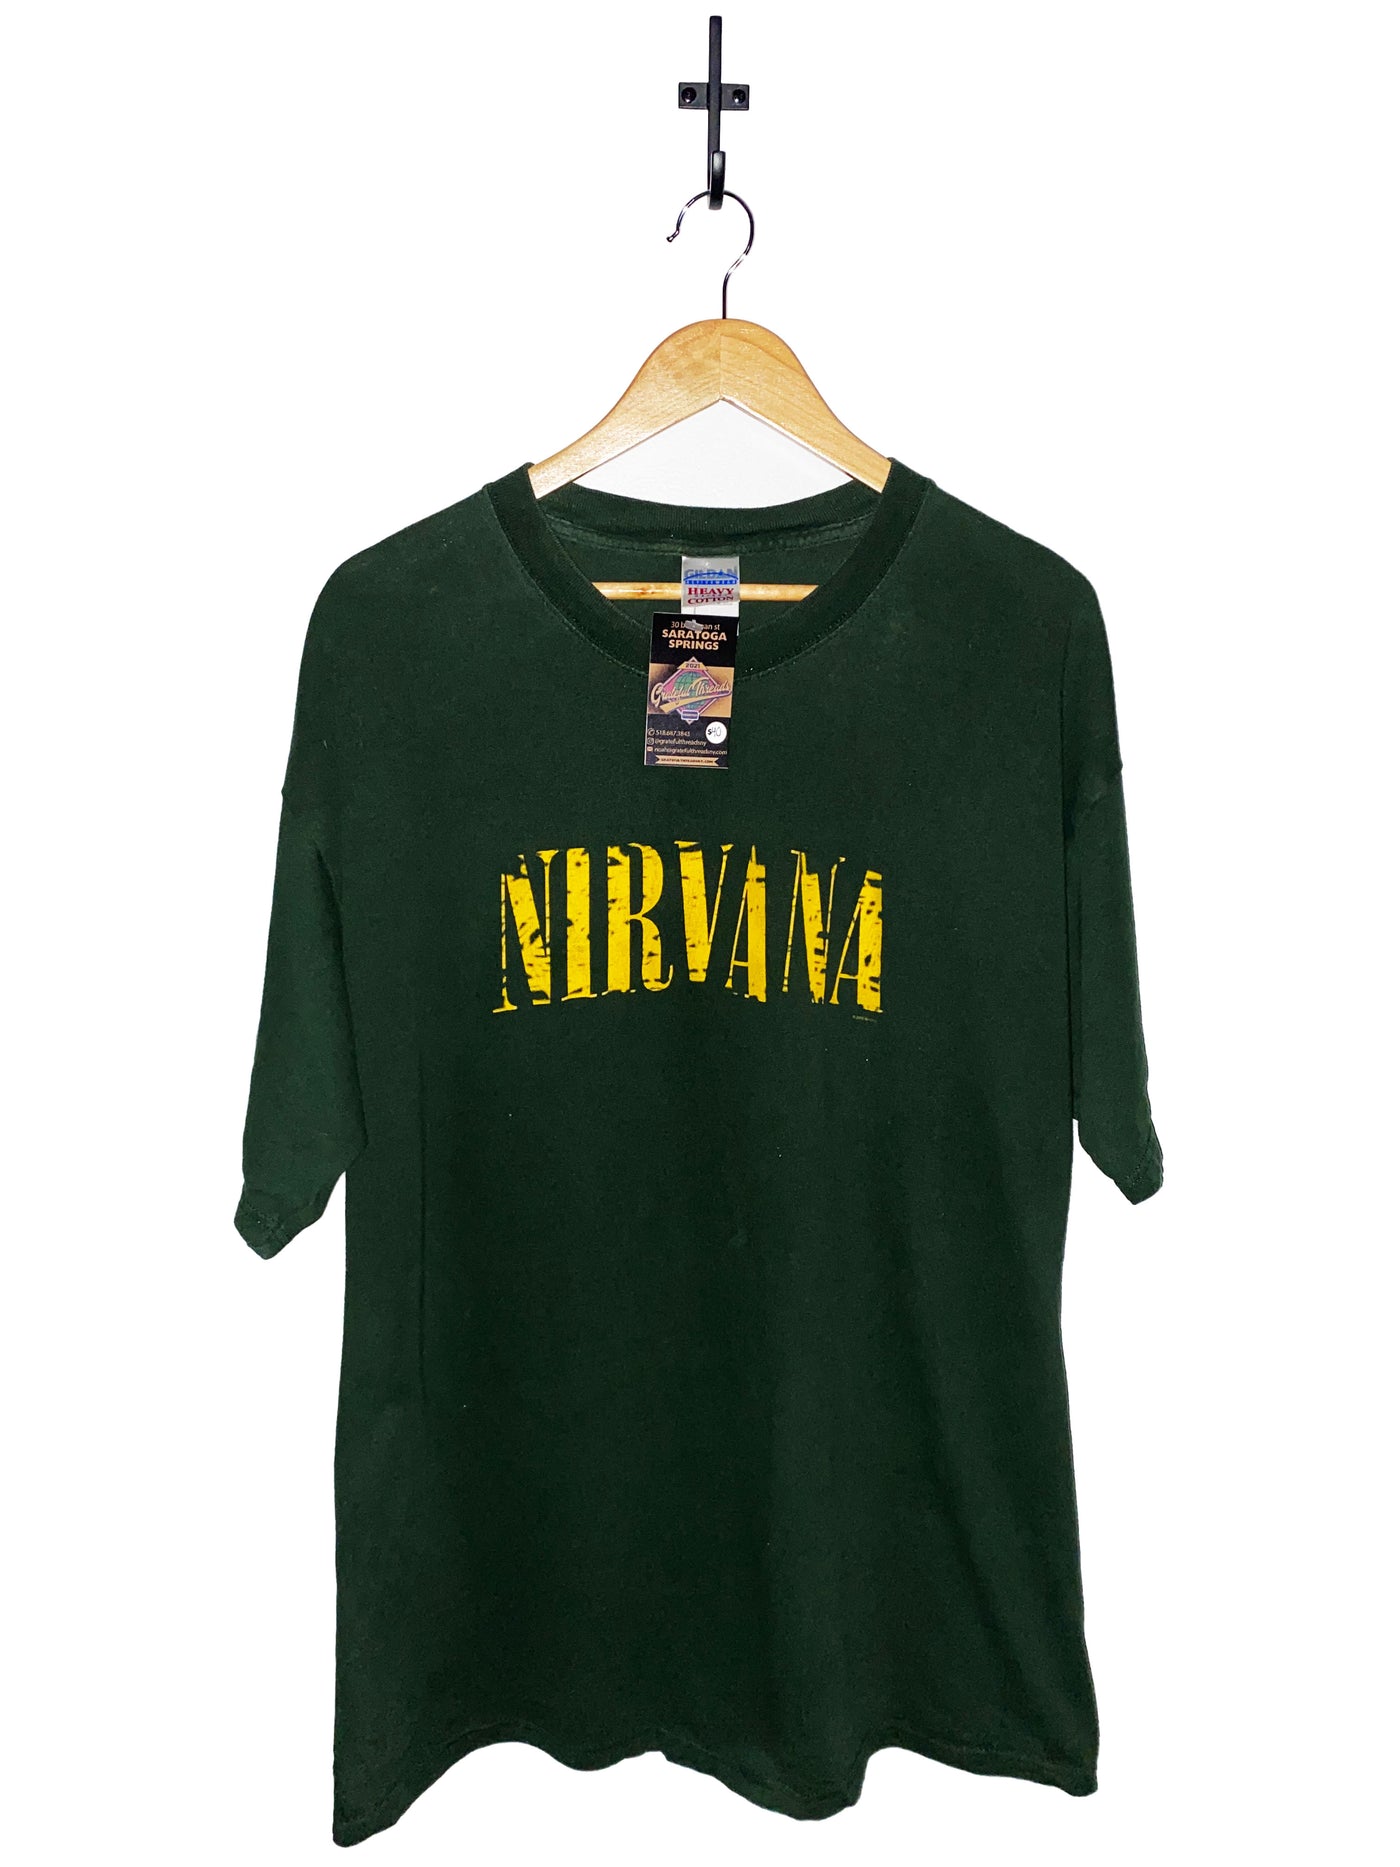 2005 Nirvana T-Shirt